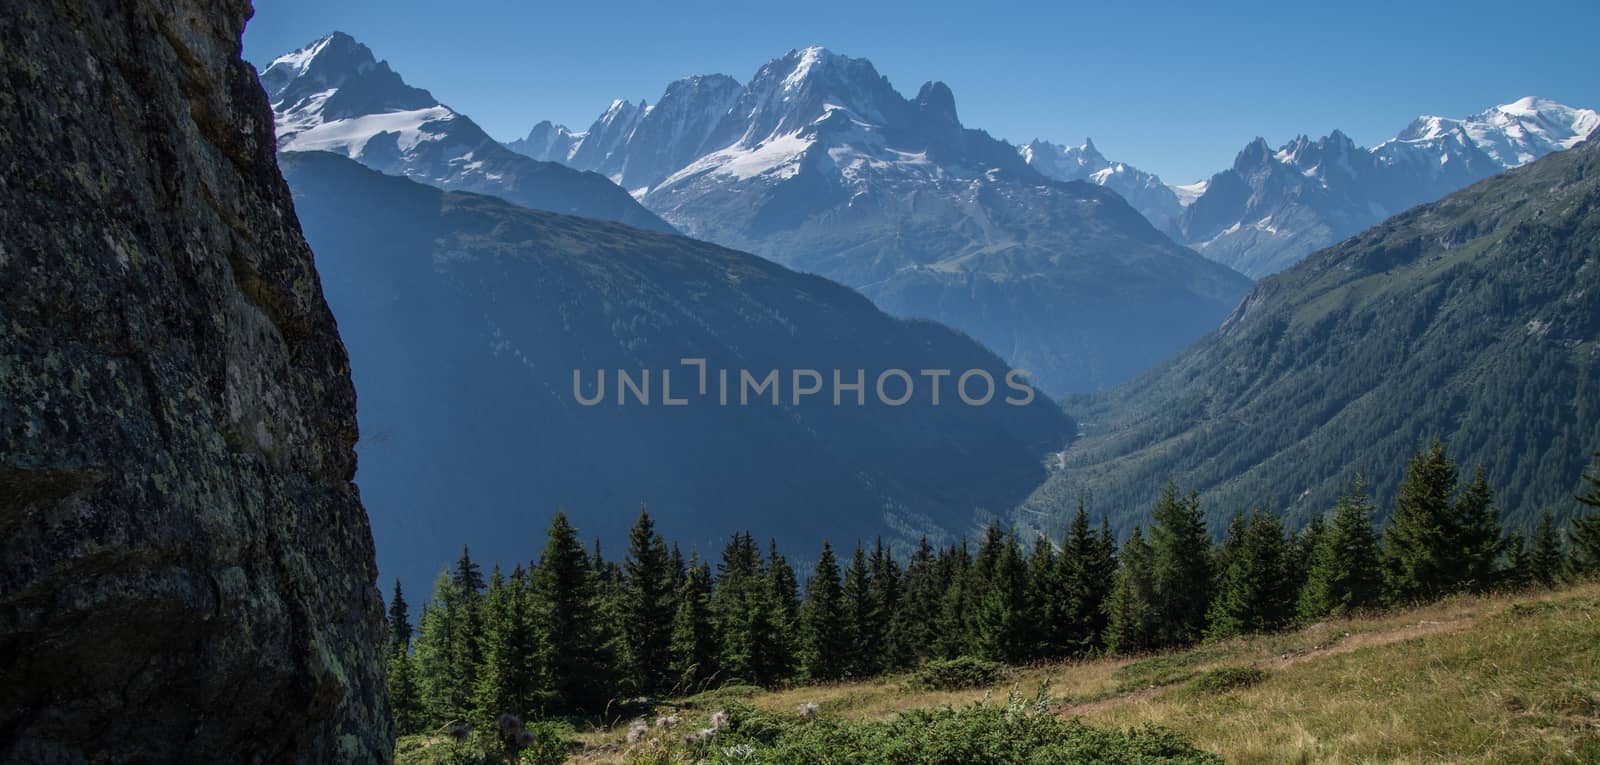 massif du mont blanc,la loriaz,vallorcine,haute savoie,france by bertrand